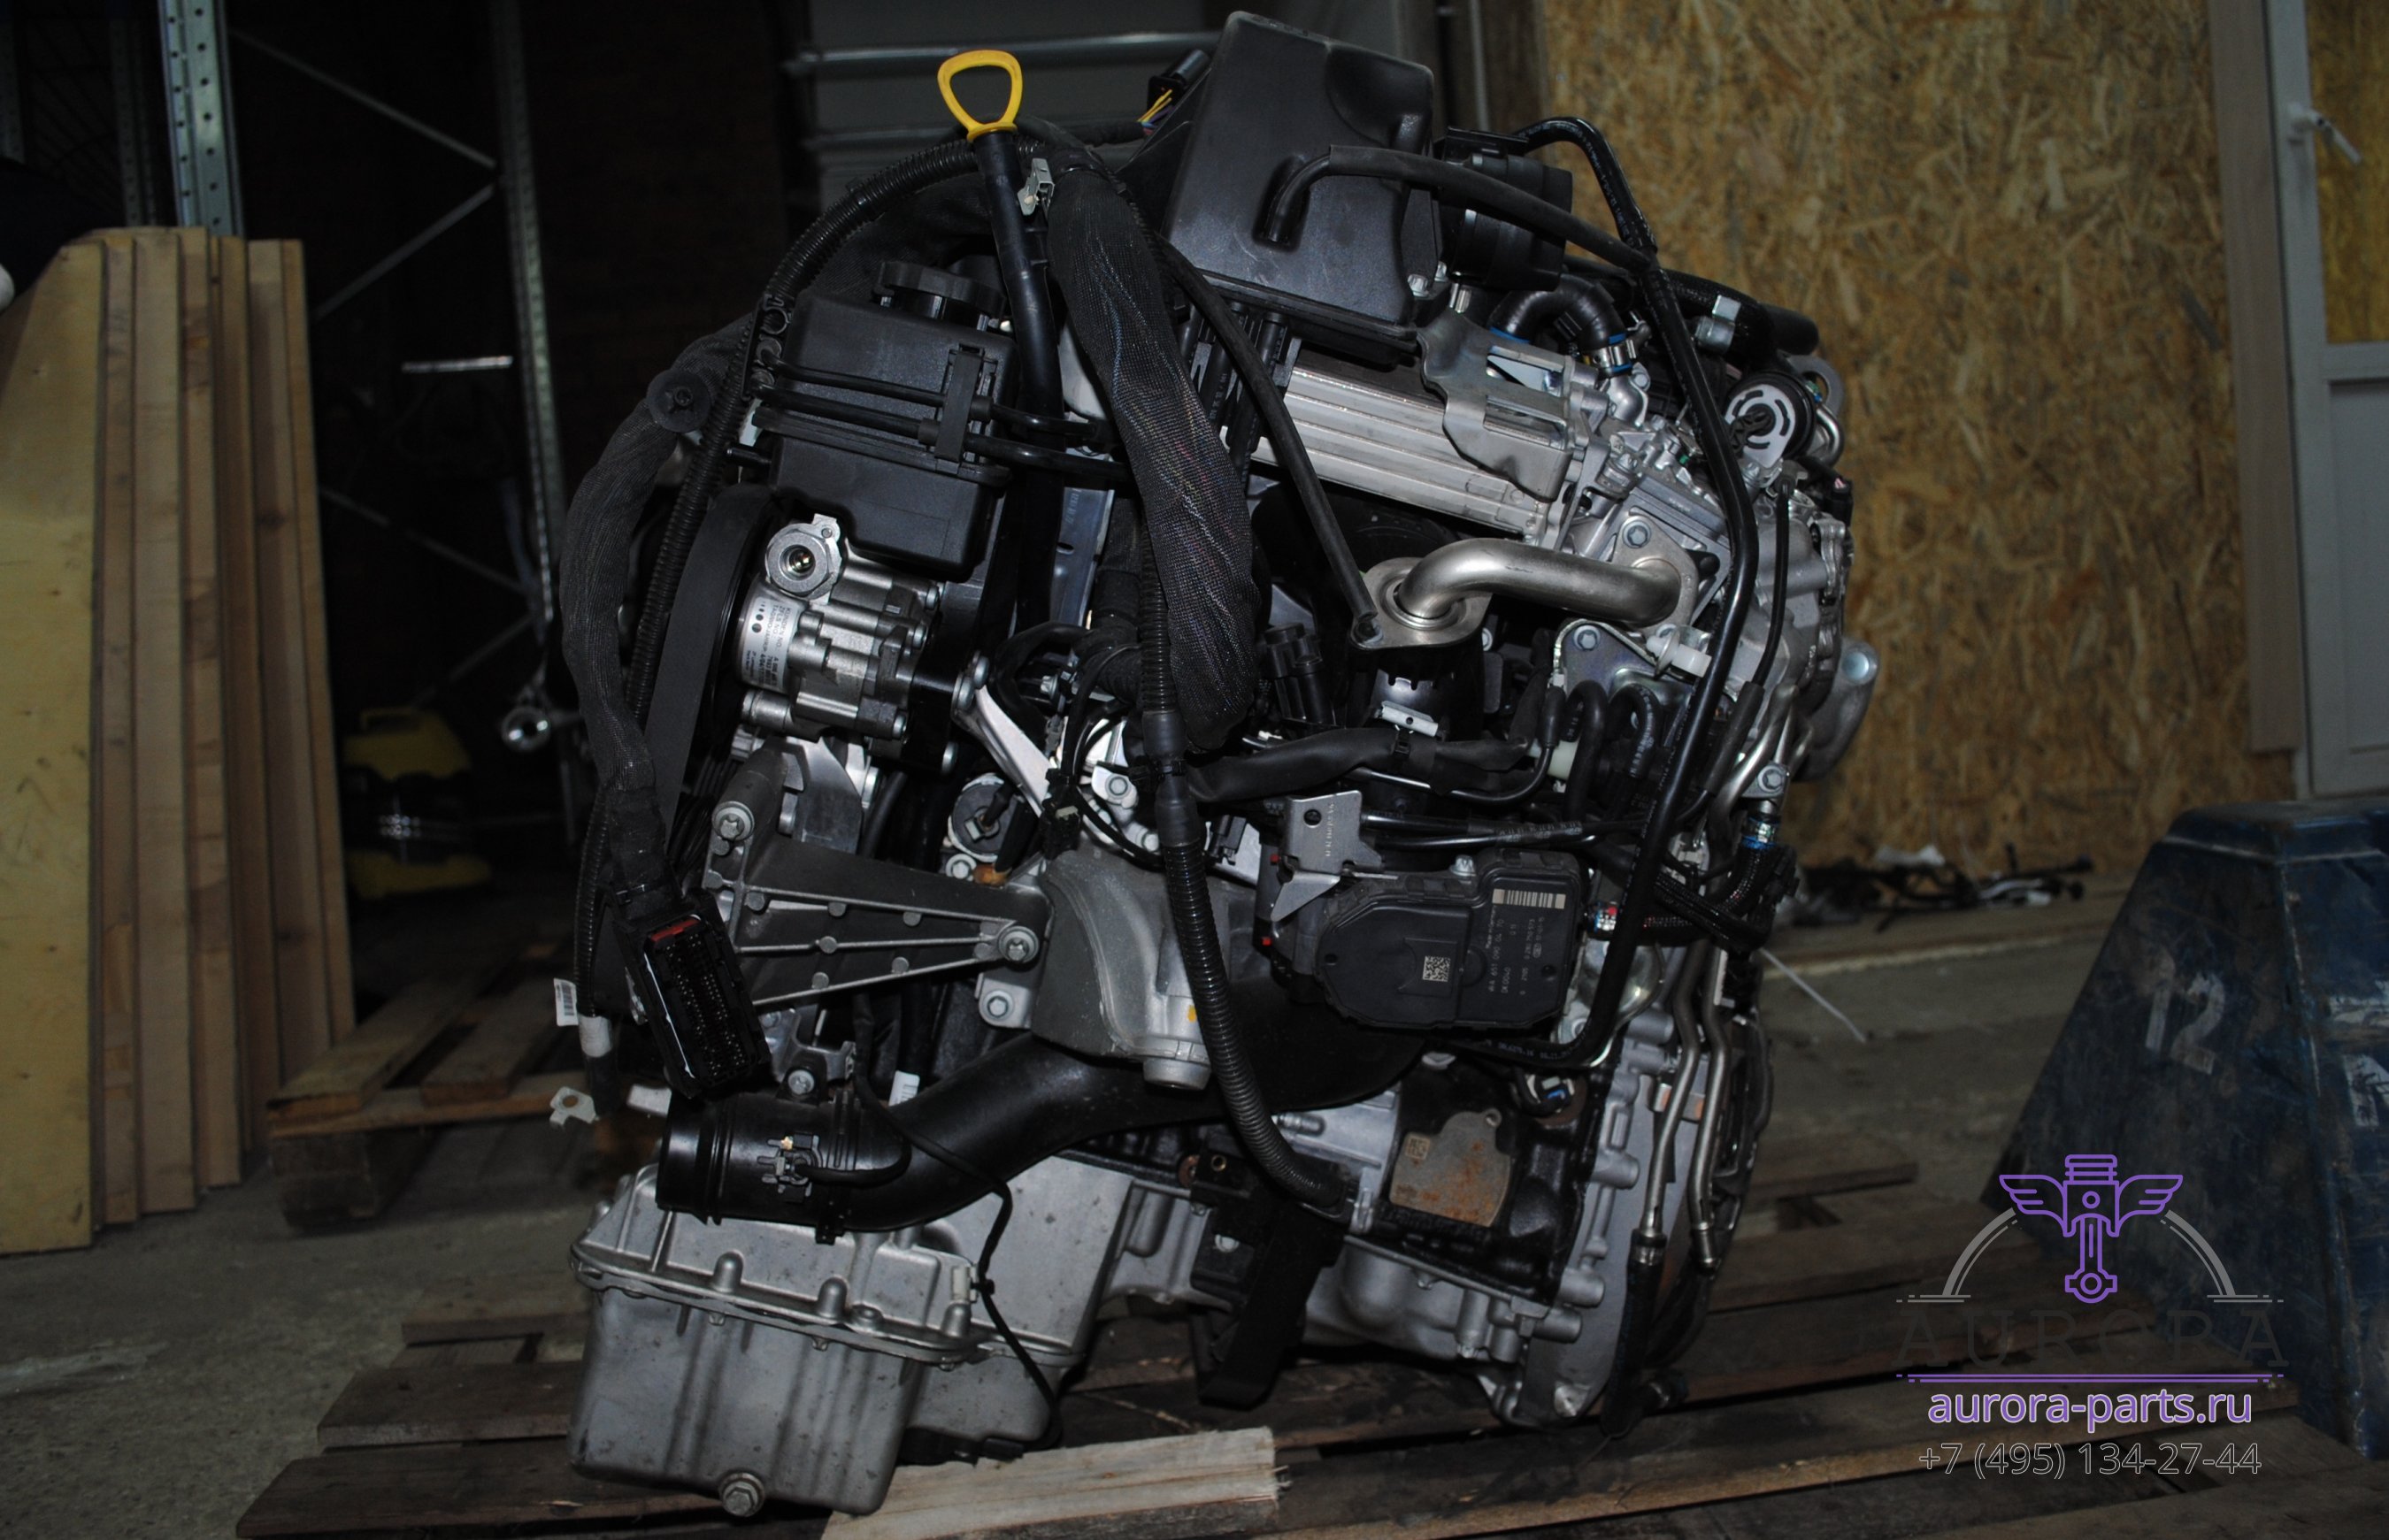 Двигатель в сборе  2.2 CDi OM 651 (17г.в. пробег 1 тыс. км.) без сцепления и вискомуфты.